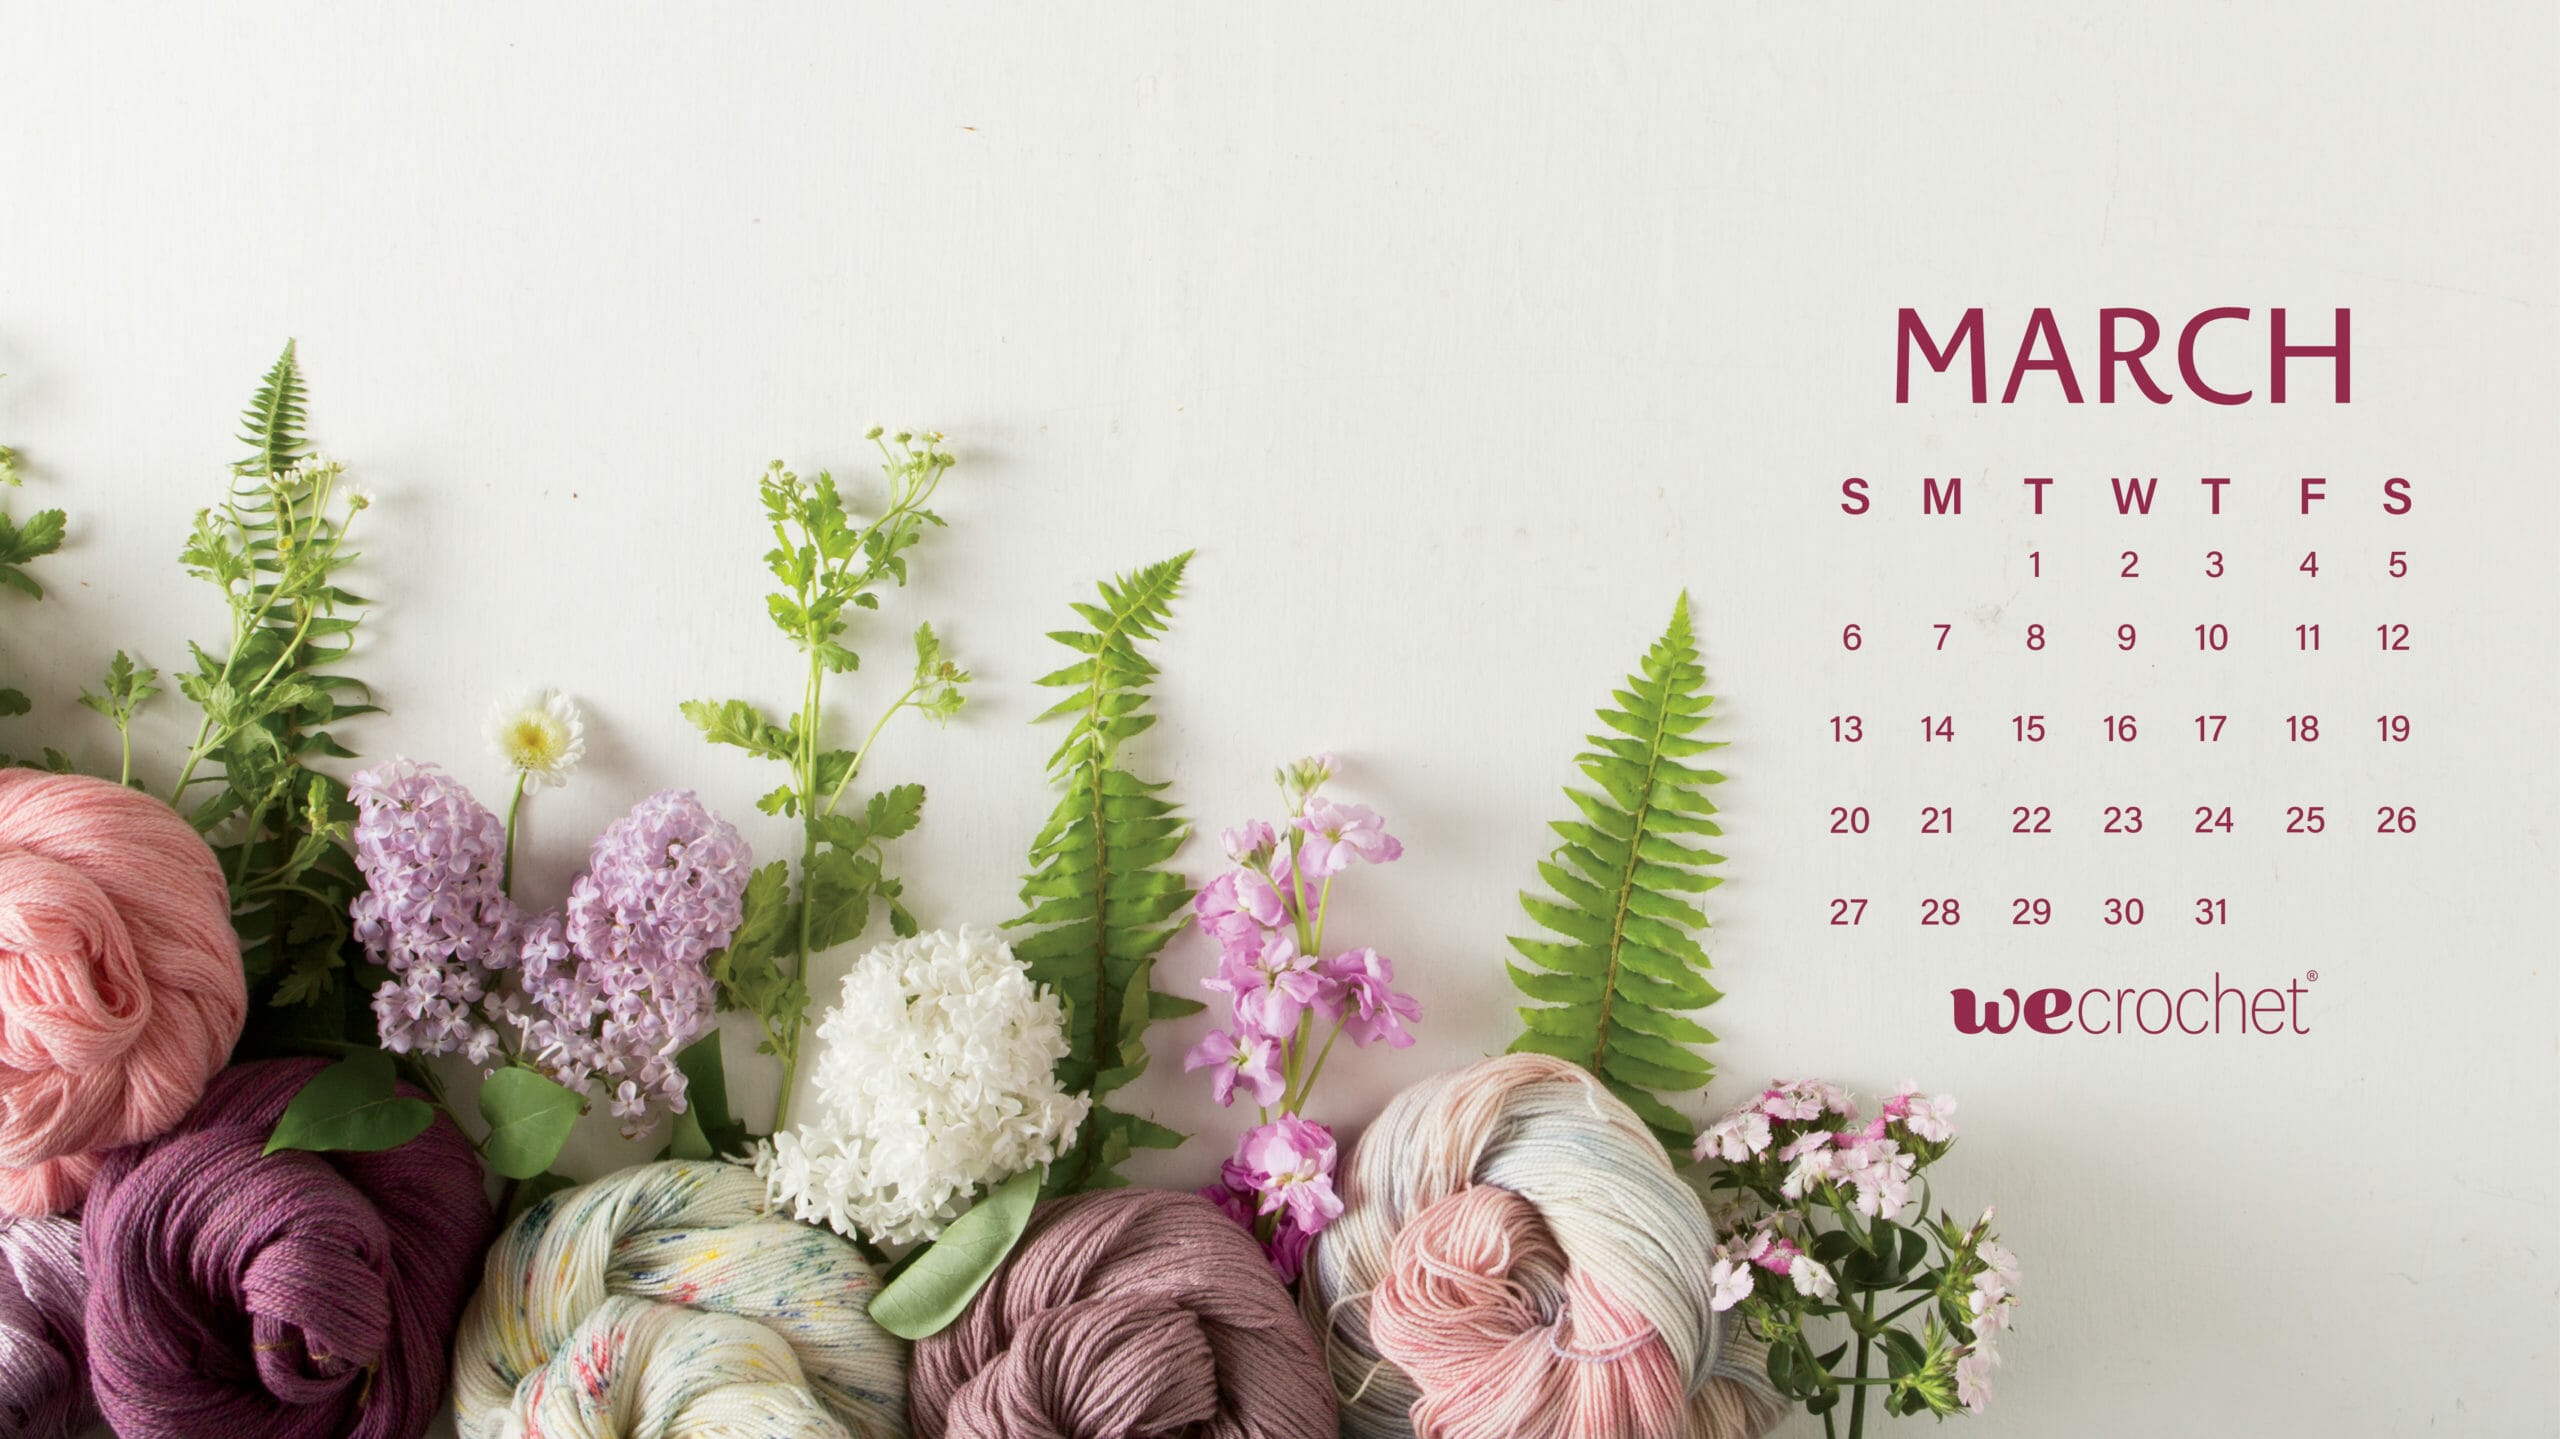 Hãy để hình nền mới thay đổi gió không khí trong ngôi nhà của bạn với hình ảnh tháng 3 đầy màu sắc. Wallpapers Calendar sẽ mang đến không gian mới cho bạn cảm nhận được những tiết trời đầy nắng và tươi mới của mùa xuân.